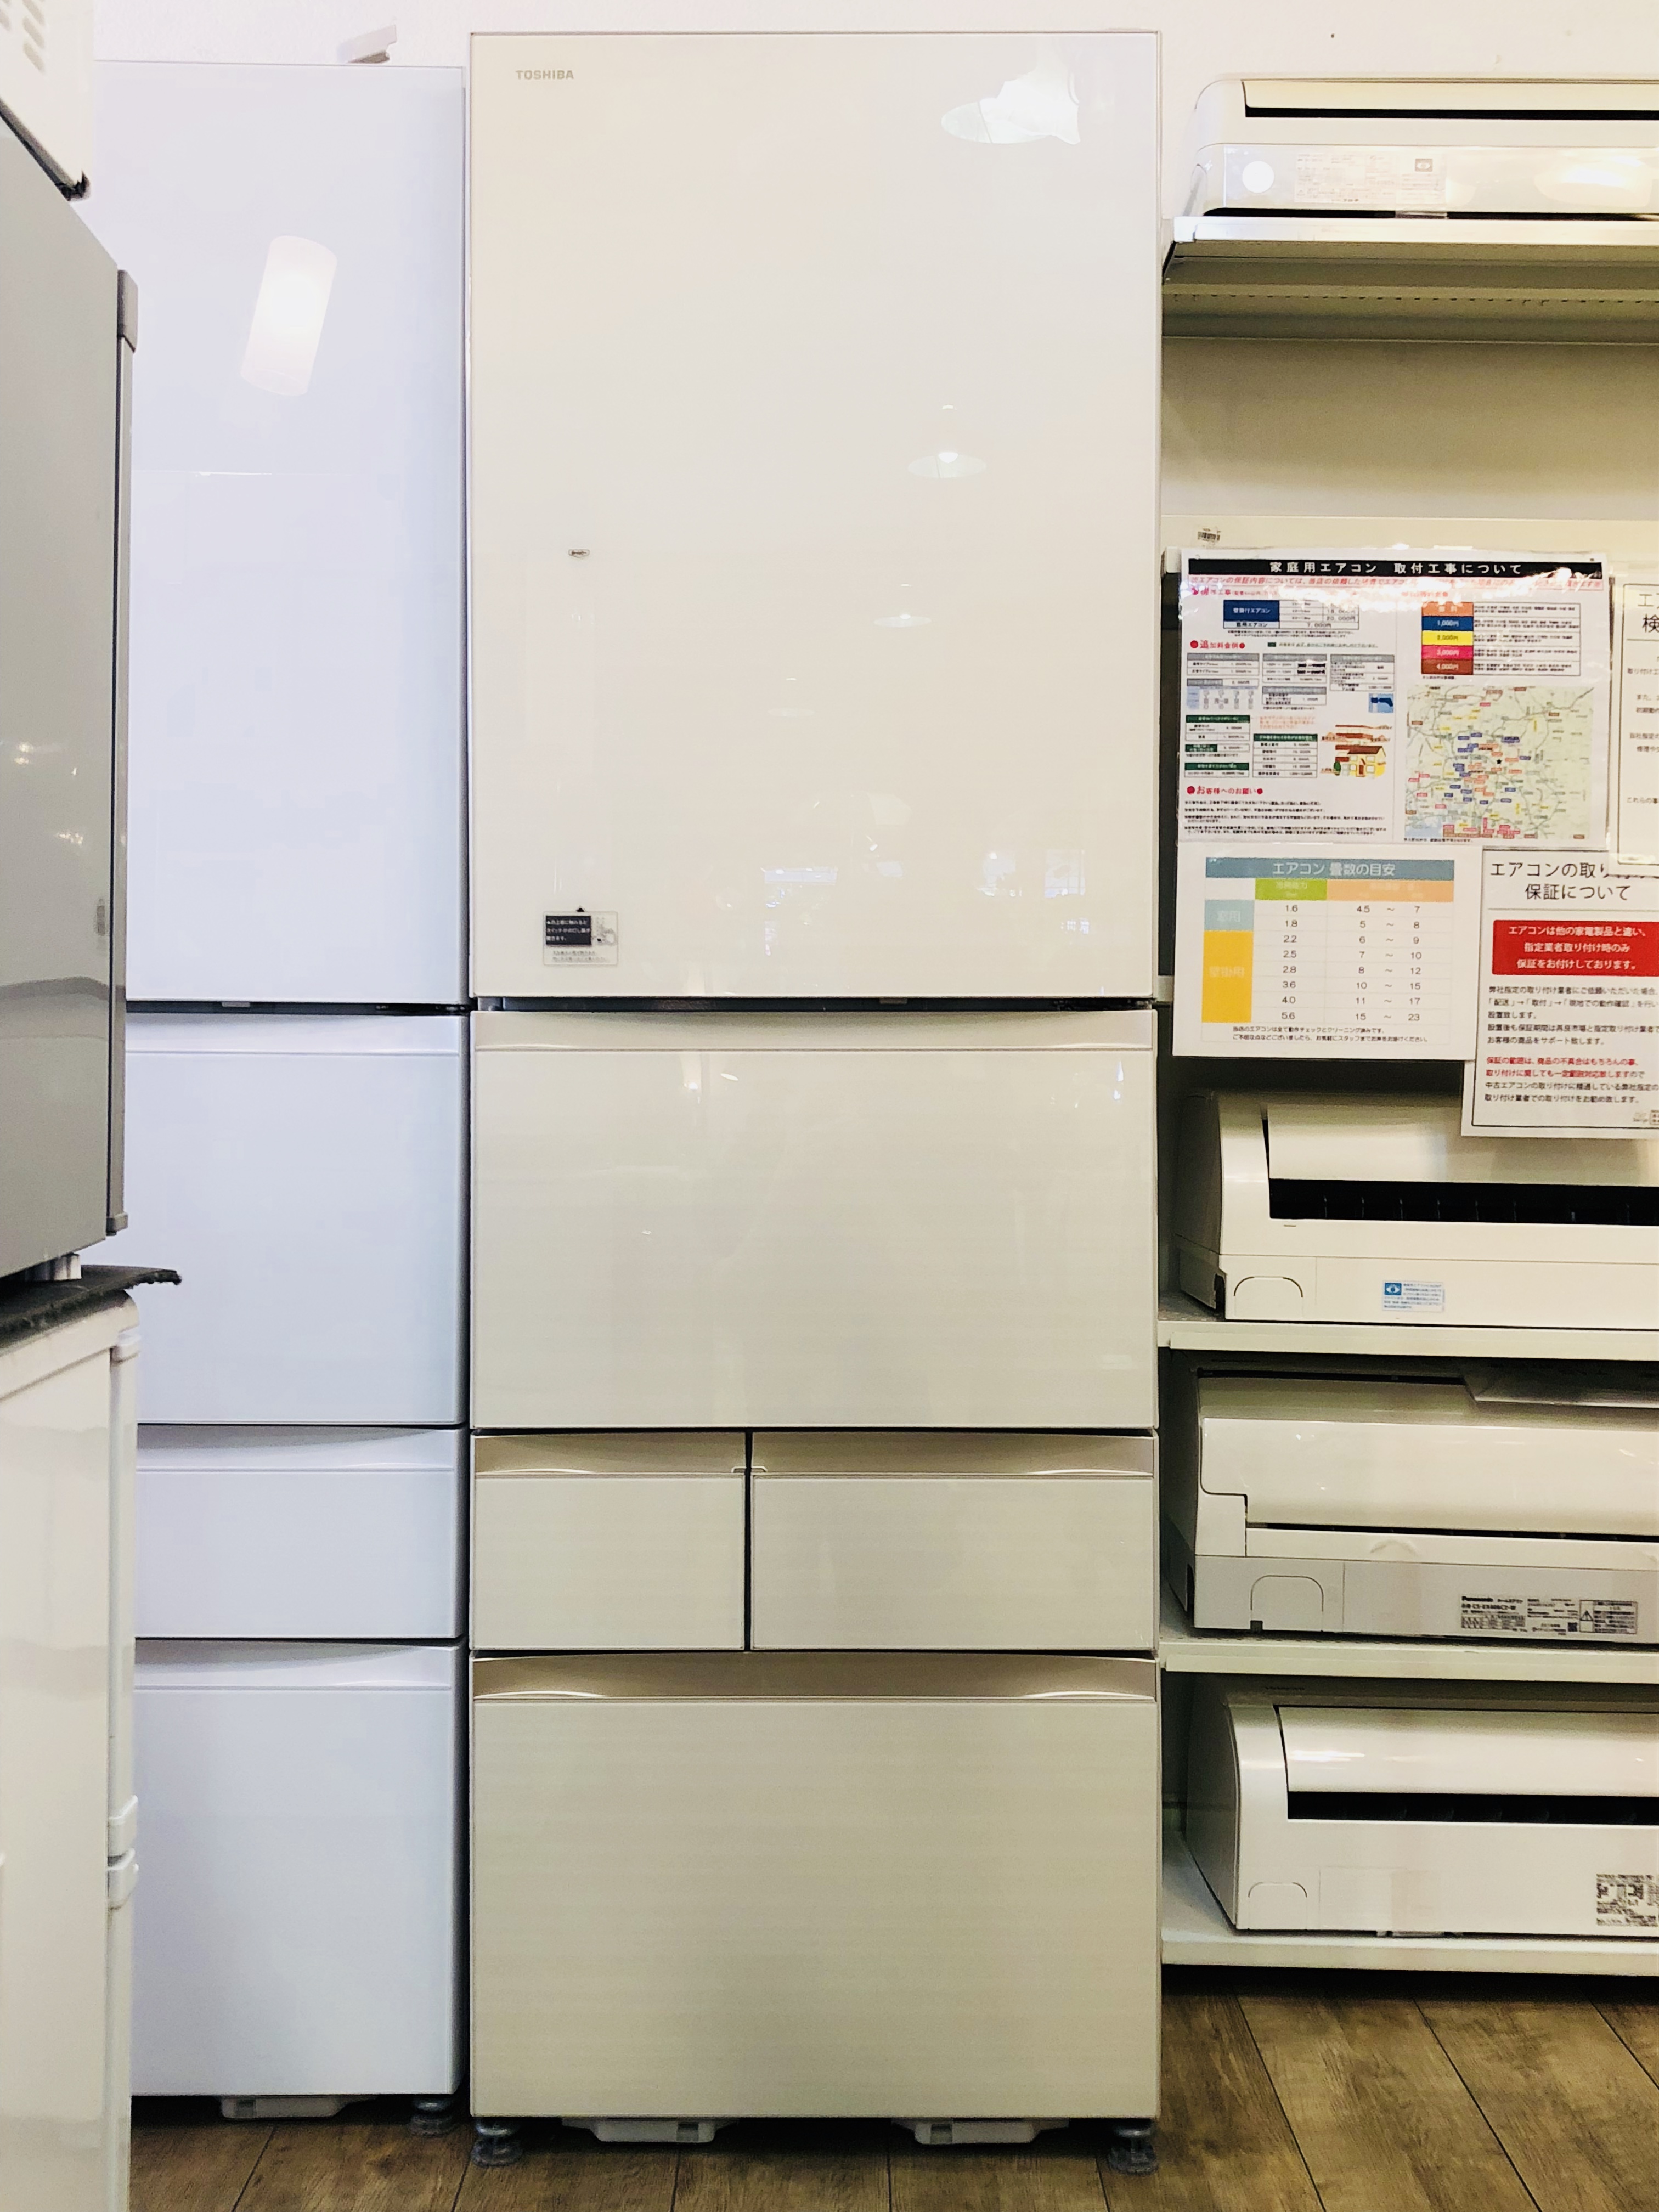 TOSHIBA 465L冷蔵庫 GR-M470GW 買取しました。 | 愛知と岐阜のリサイクルショップ 再良市場